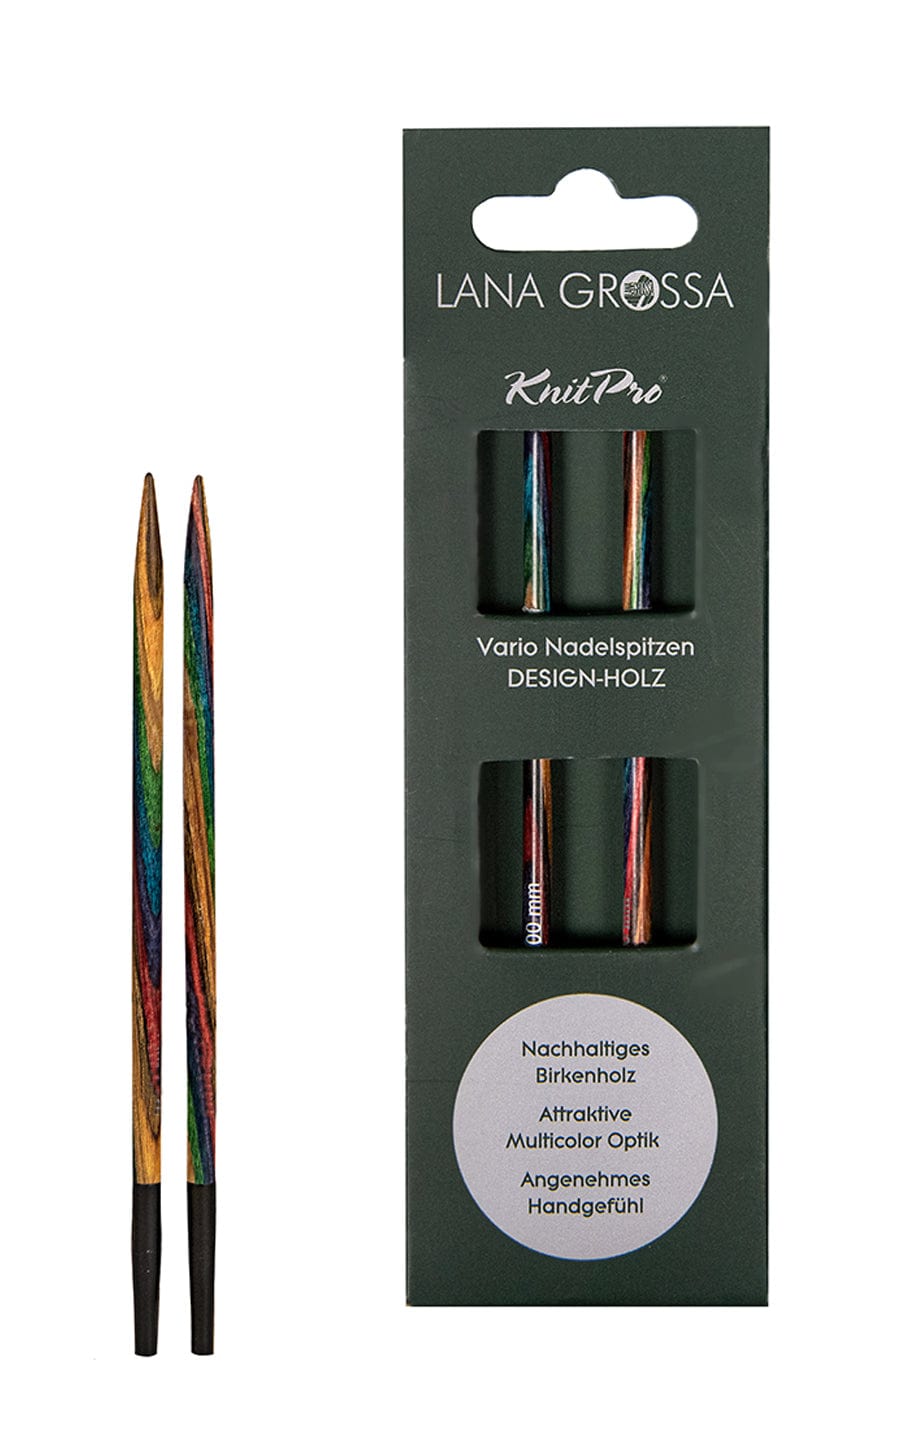 Kurze 5,0 mm Nadelspitze Vario aus Holz - neue Verpackung von LANA GROSSA jetzt online kaufen bei OONIQUE